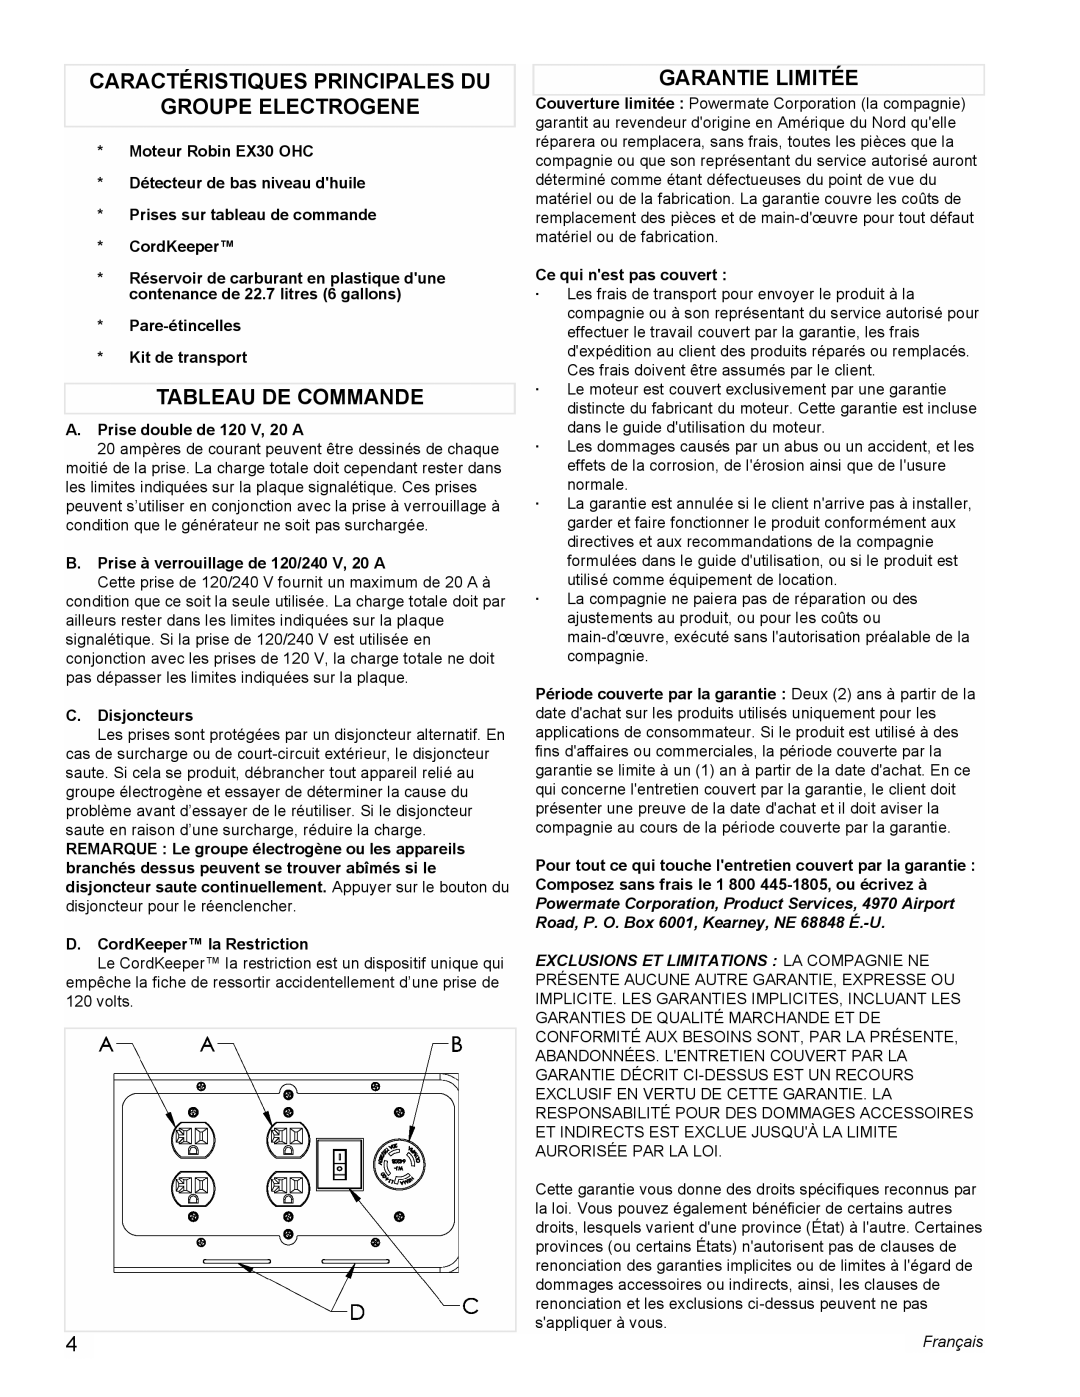 Powermate PMC435003 Caractéristiques Principales Du, Groupe Electrogene, Tableau De Commande, Garantie Limitée, Français 